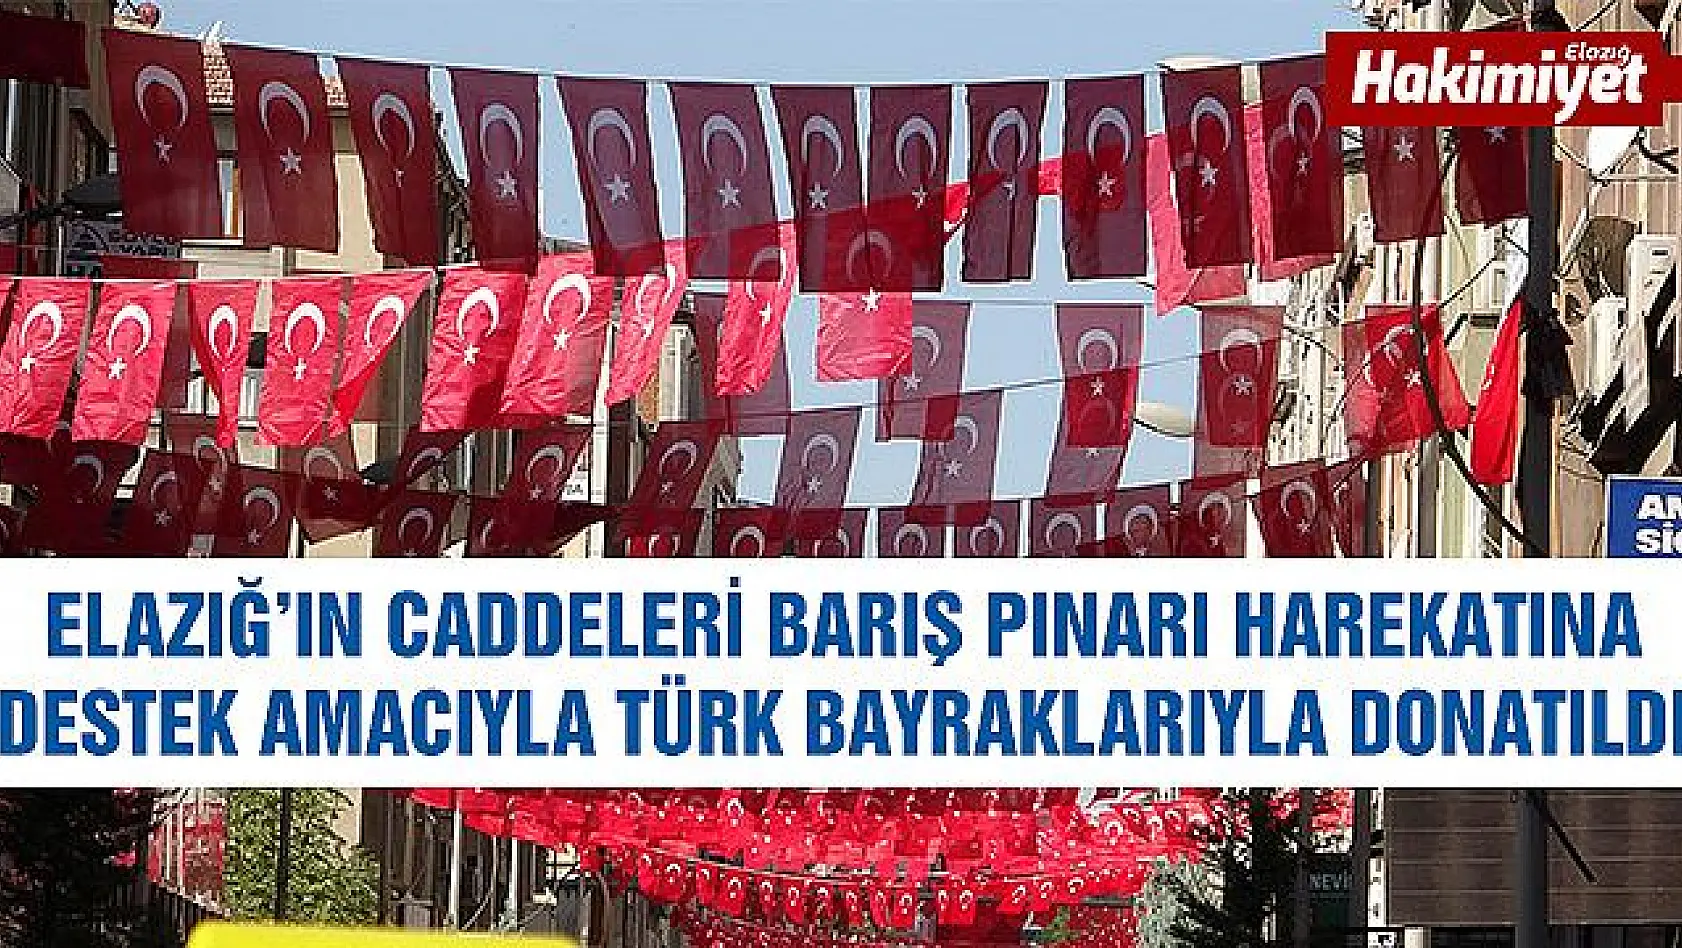 Elazığ Türk bayraklarıyla gelin gibi süslendi